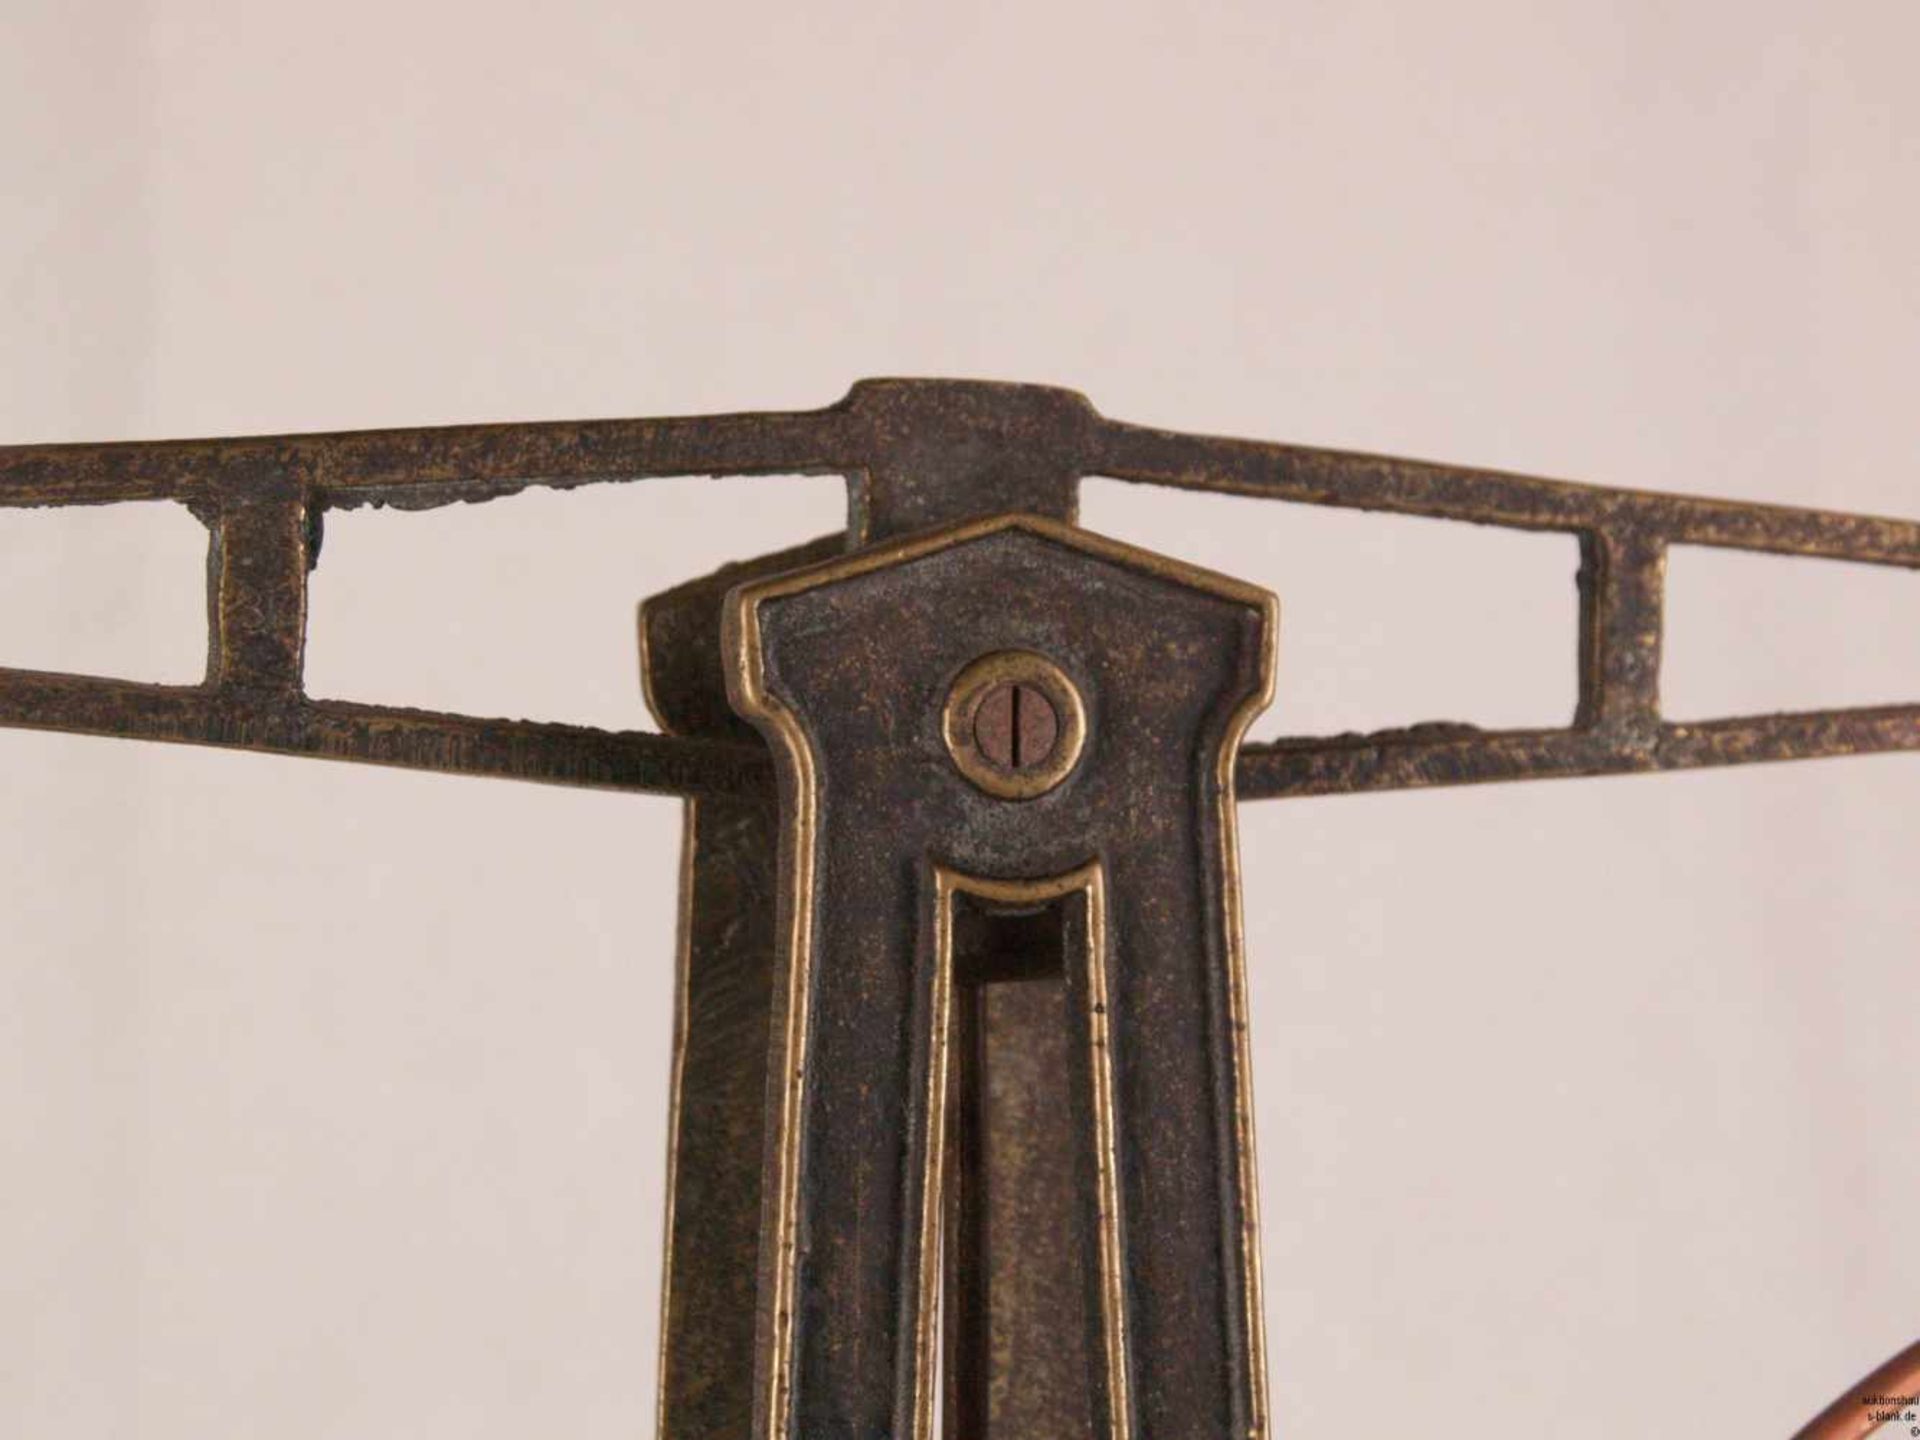 Balkenwaage - Metall/Holz, durchbrochen gearbeiteter Schaft mit Monogramm "KS", zwei runde - Bild 2 aus 7